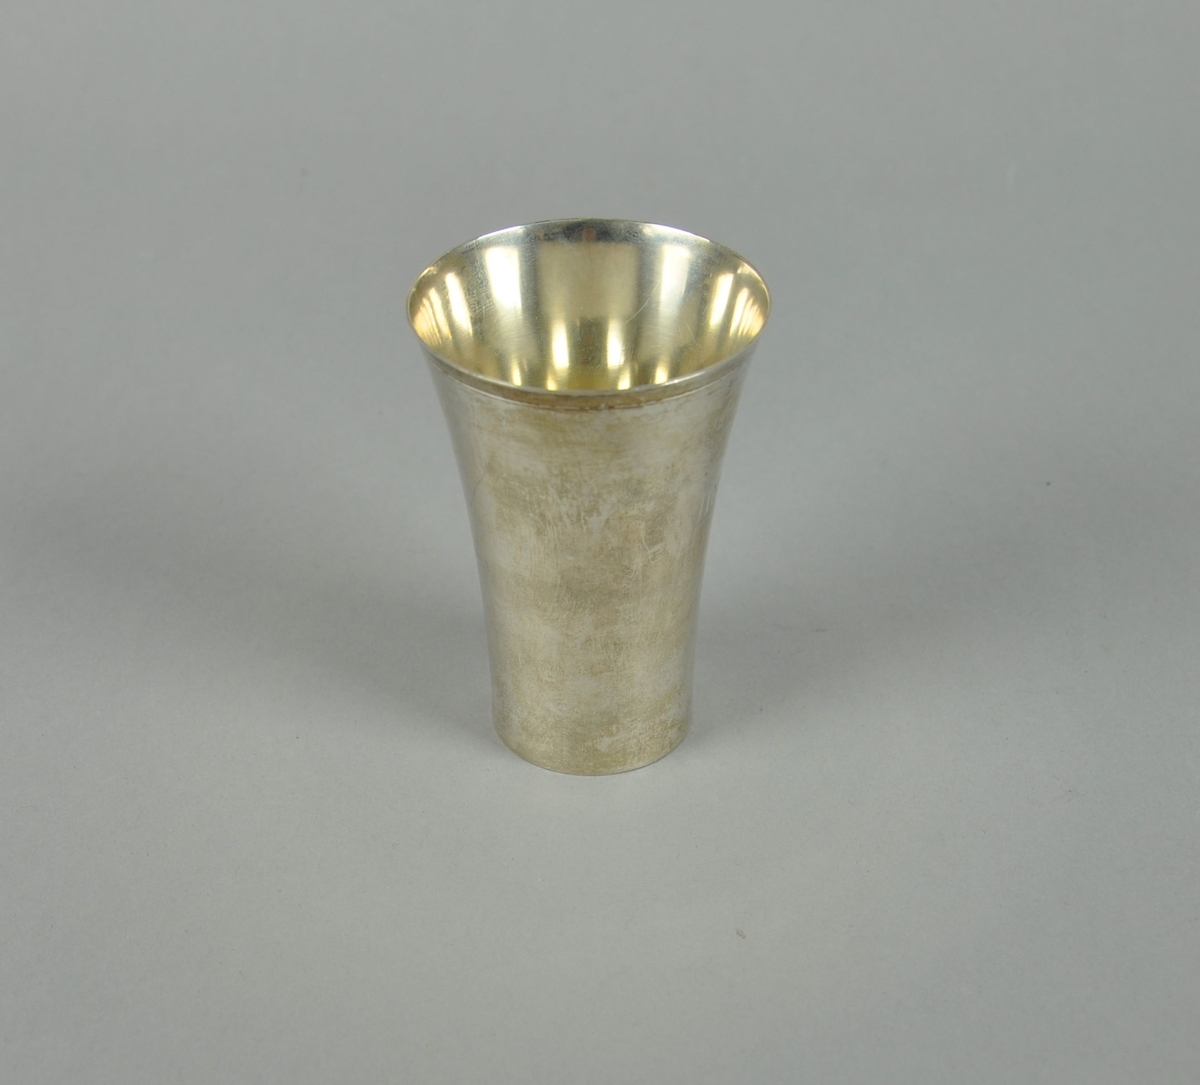 Pokal av sølv. Pokalen har sylindrisk form med utvidelse mot toppen.